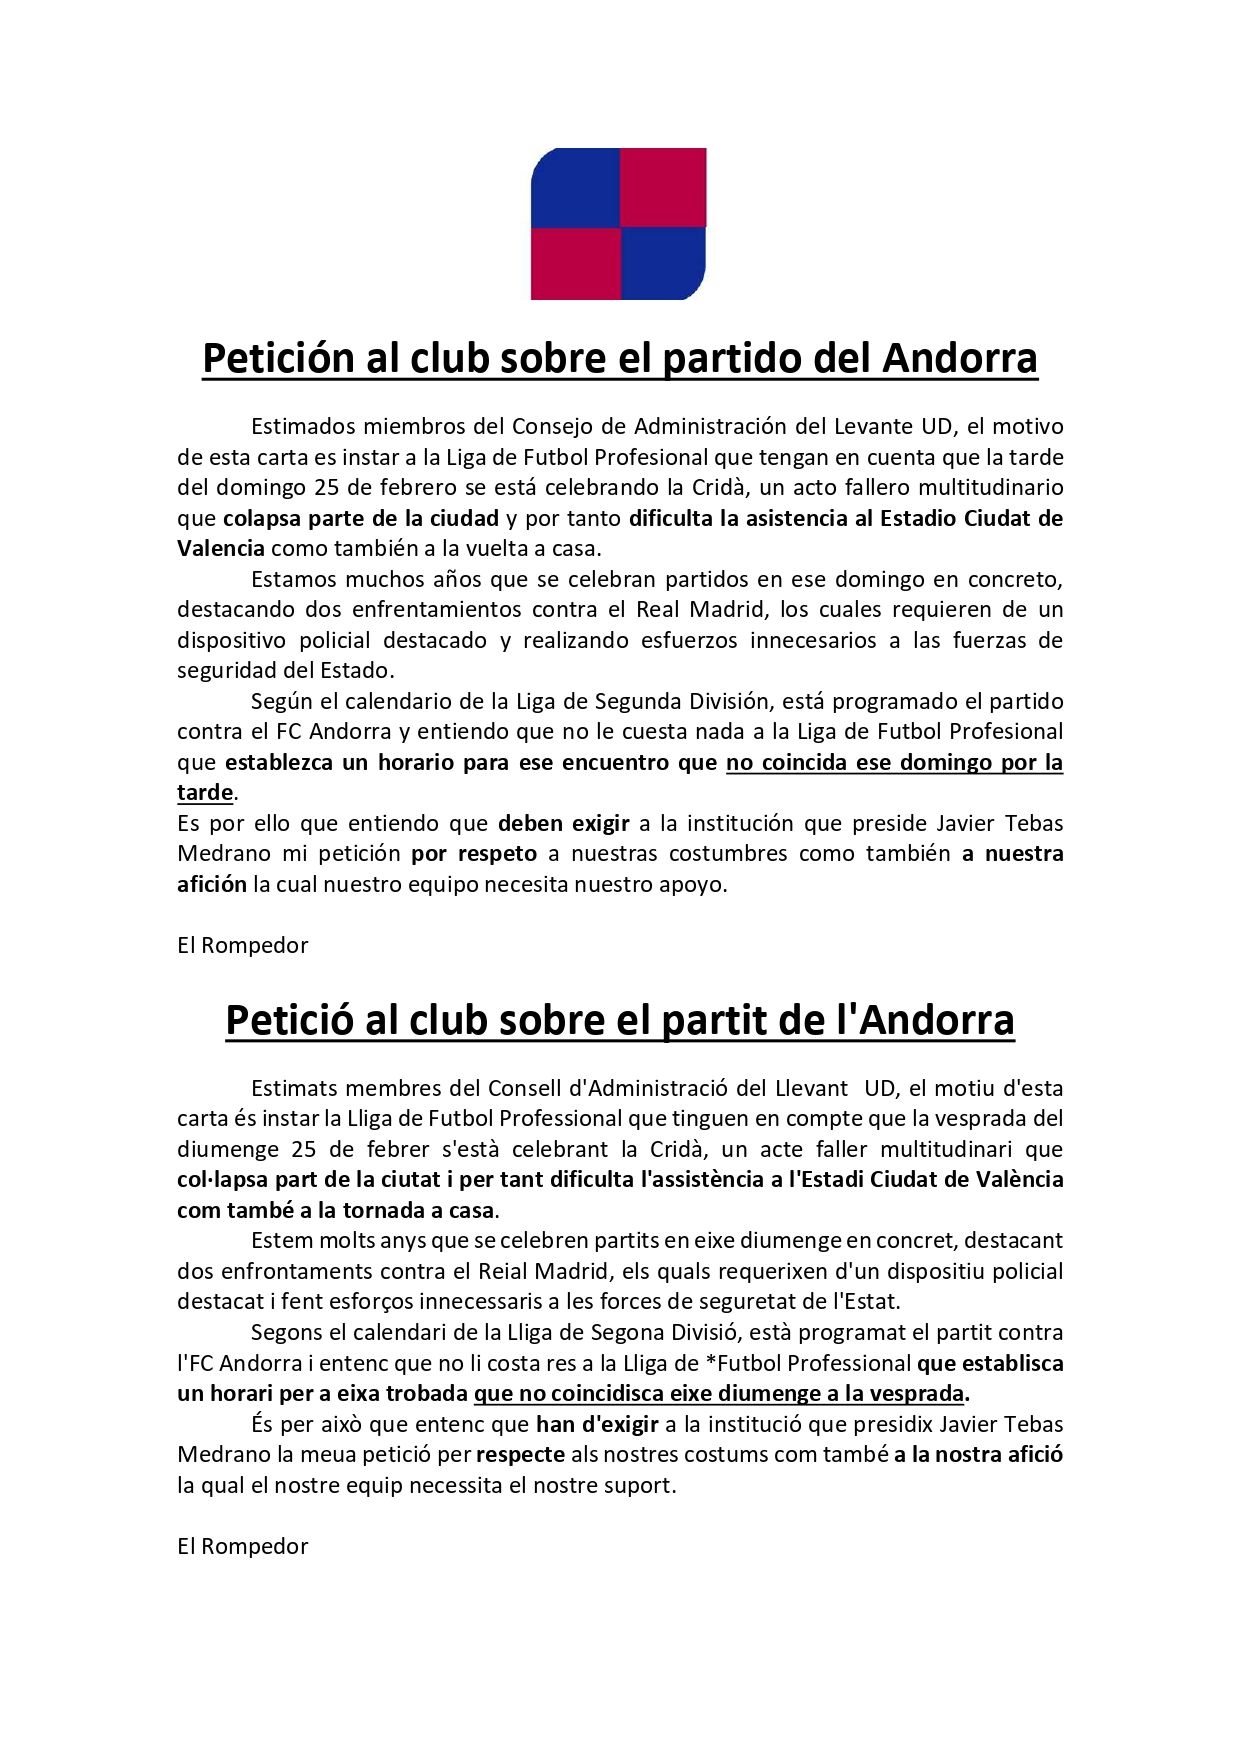 Petición partido Andorra_page-0001.jpg